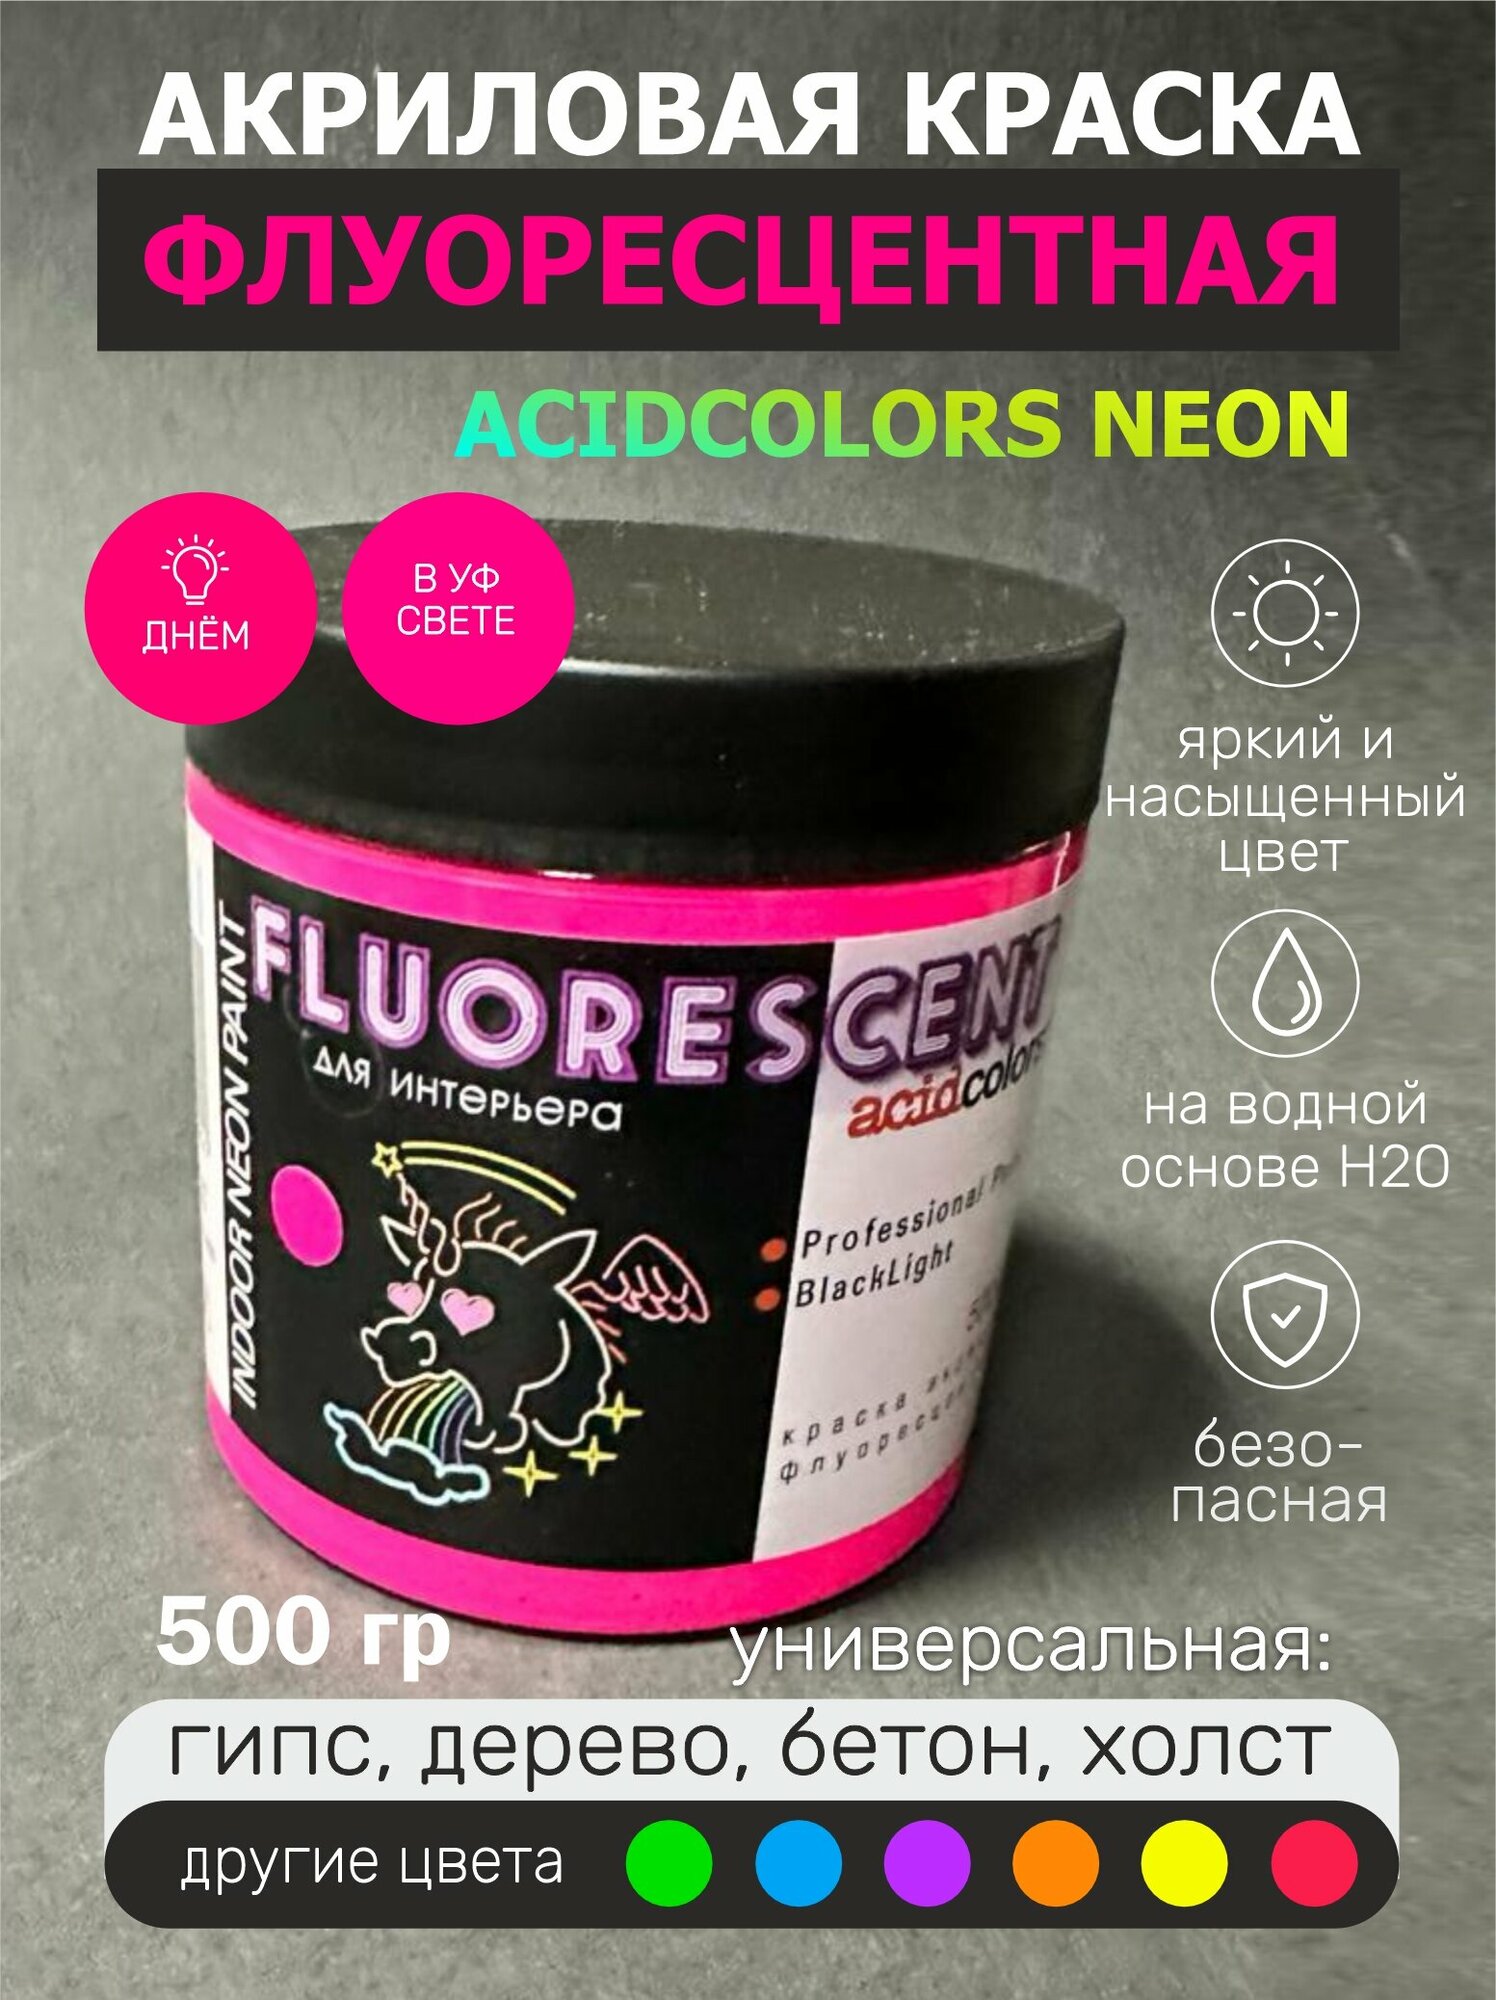 Краска AcidColors FLUORESCENT NEON акриловая Флуоресцентная художественная, розовая